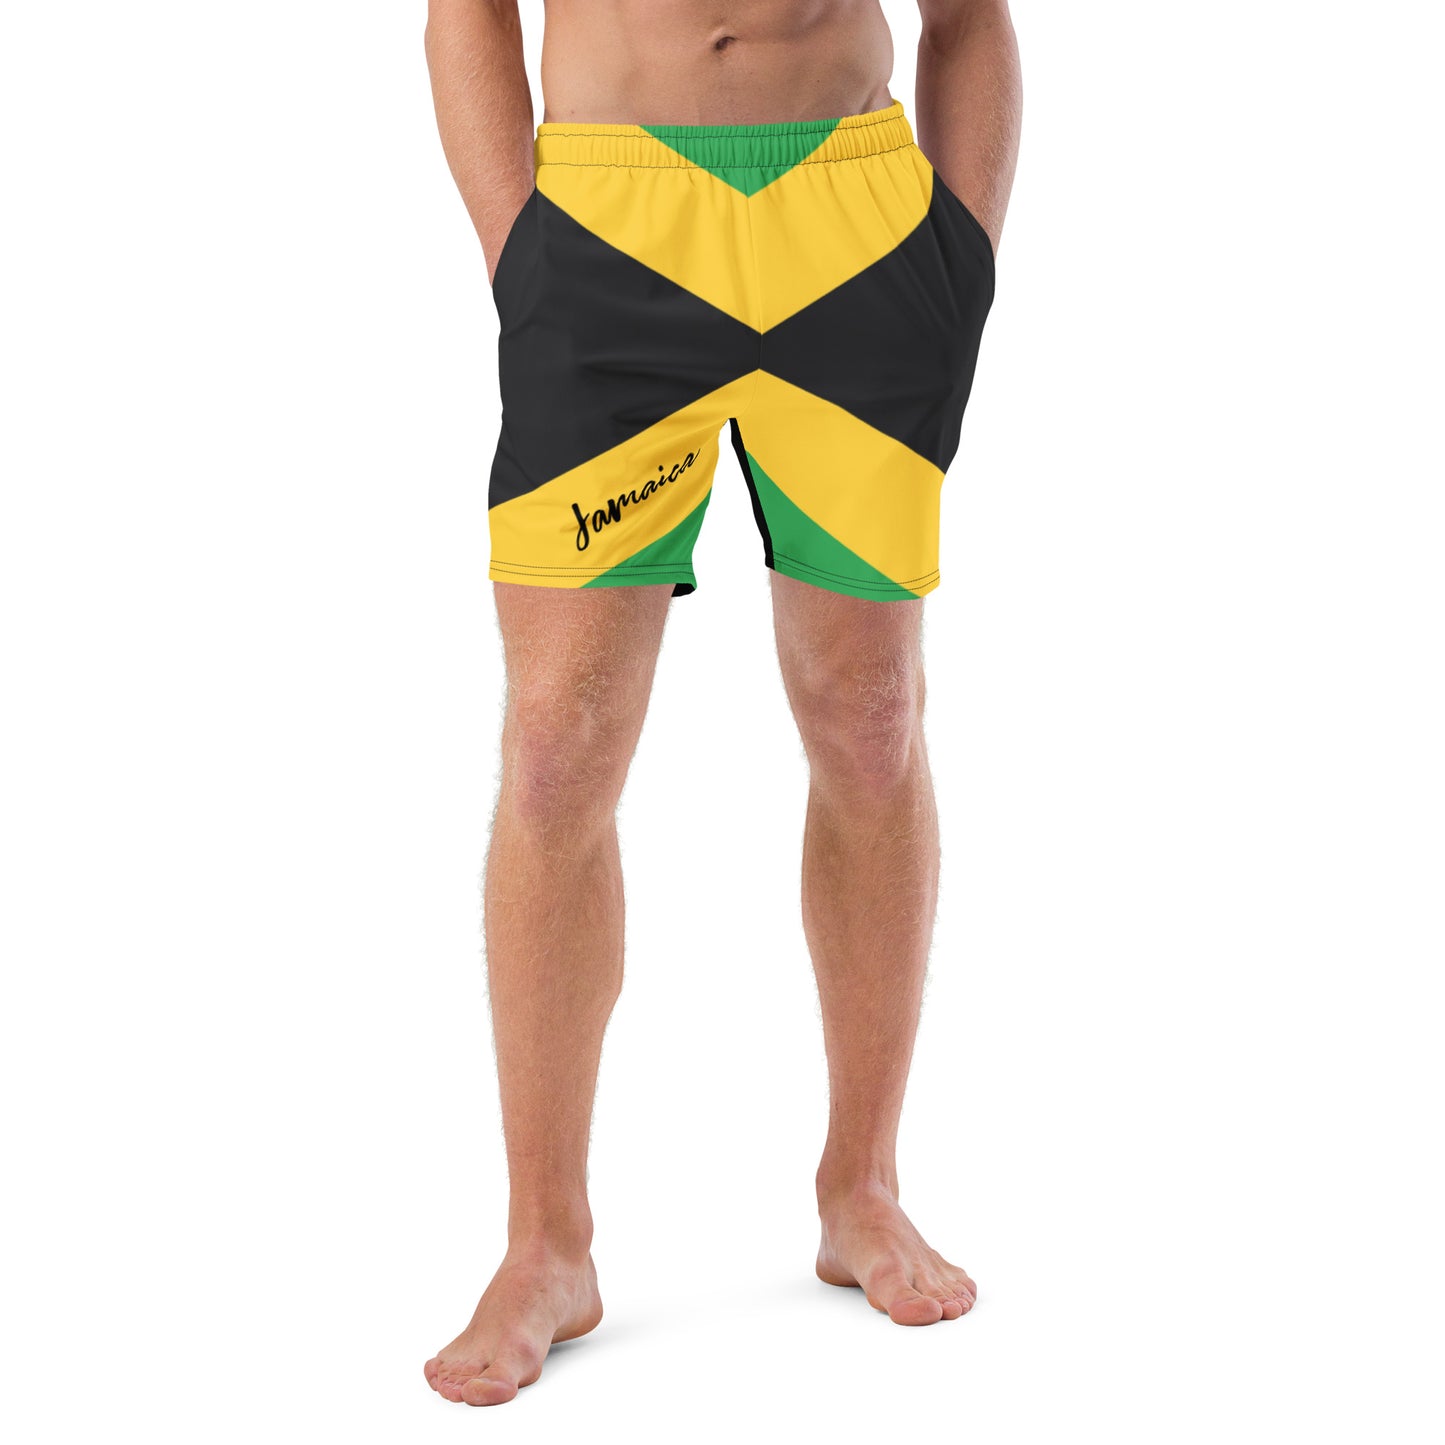 Jamaica Flag Mens Swim Trunks / Eco Friendly Swim Trunks For Men / Mesh Pockets / Small Inside Pocket For Valuables - YVDdesign